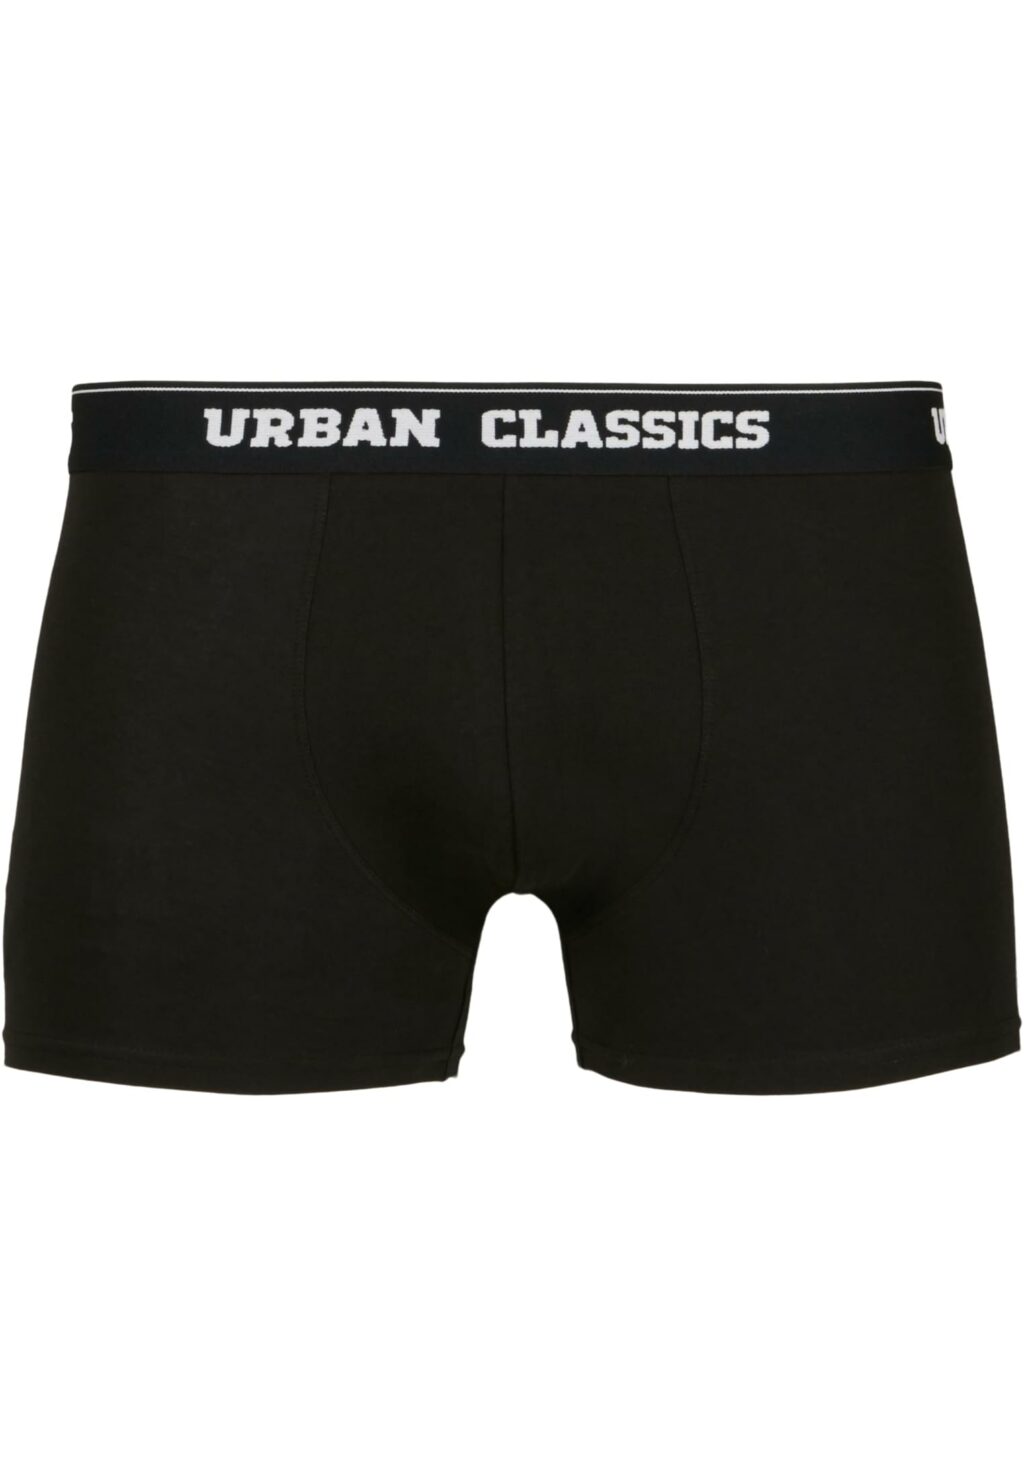 Urban Classics Organic Boxer Shorts 5-Pack blk+blk+blk+blk+blk TB4417